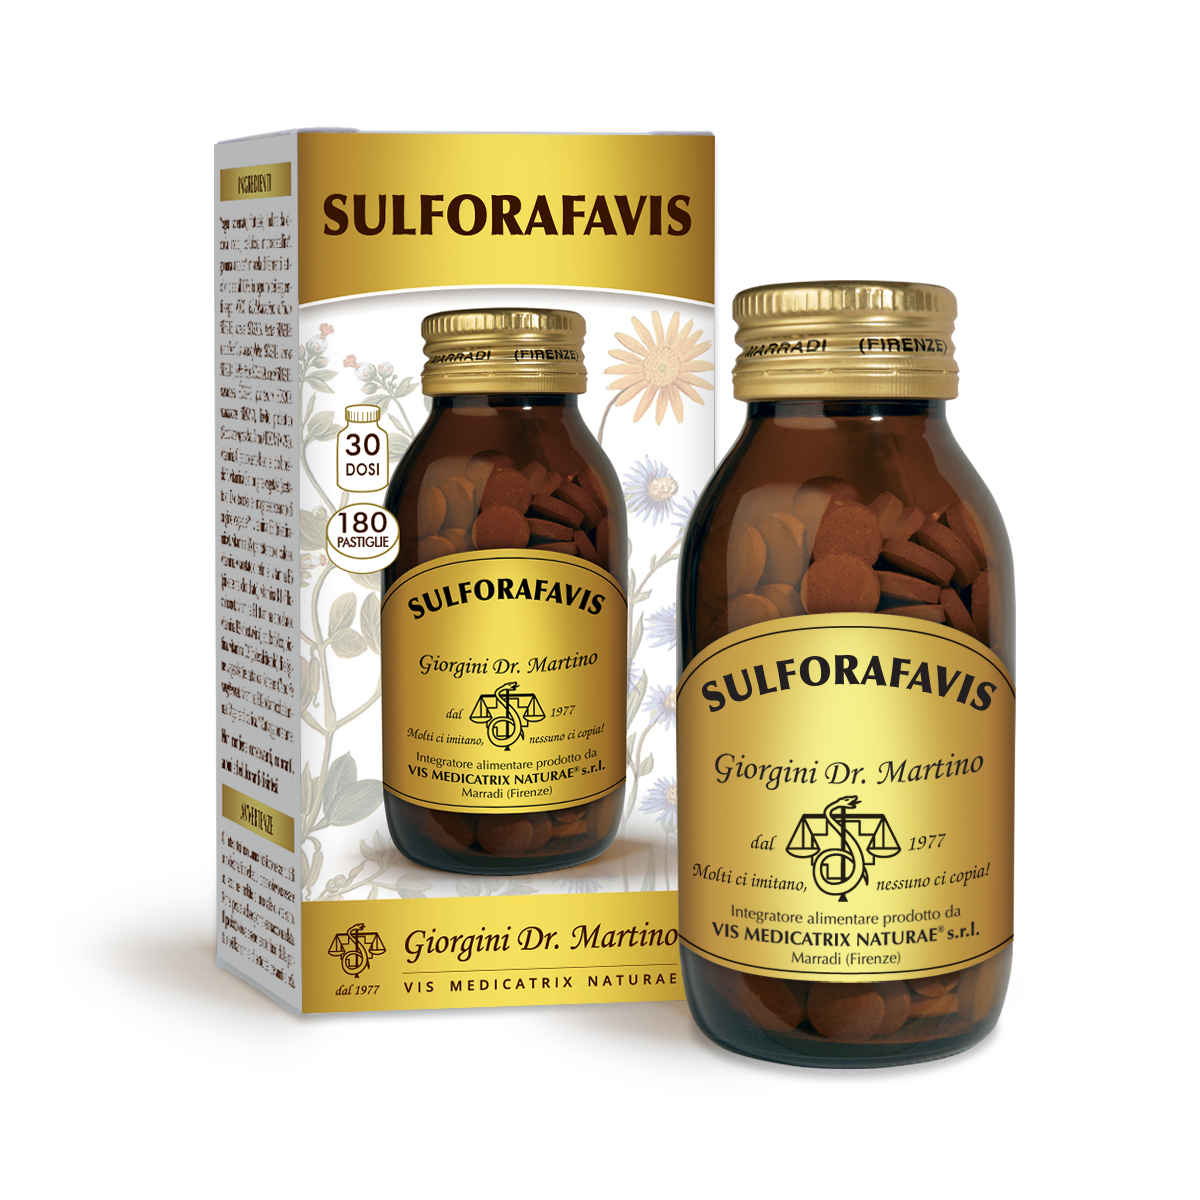 SULFORAFAVIS 90 g - 180 tabletas de 500 mg